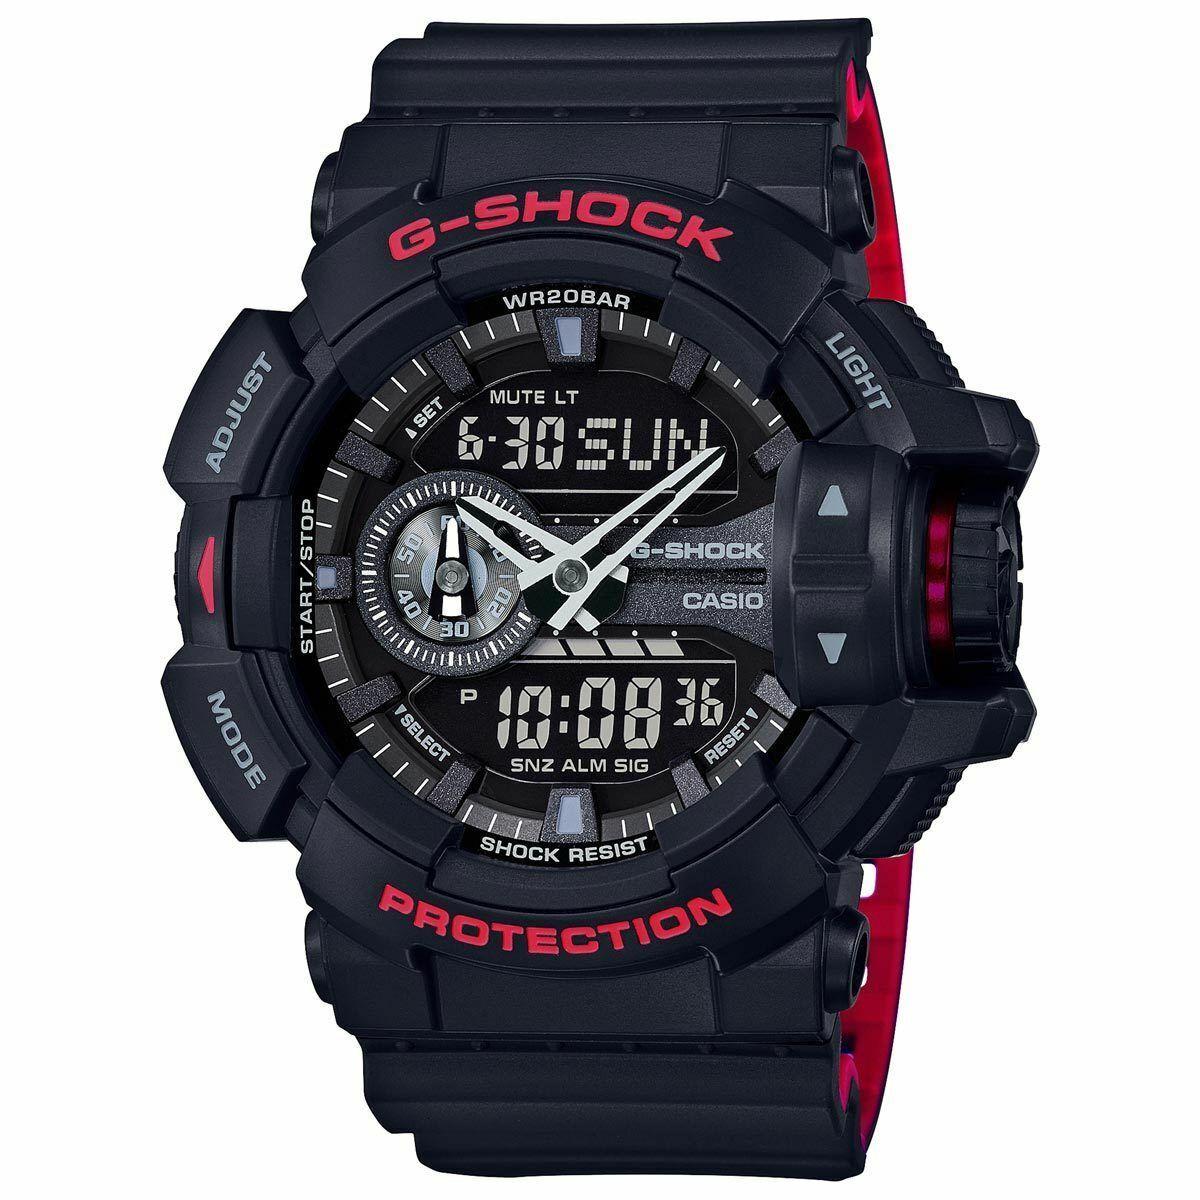 Casio G-shock GA400HR-1A Black Red Super Illuminator Analog Digital Men`s Watch